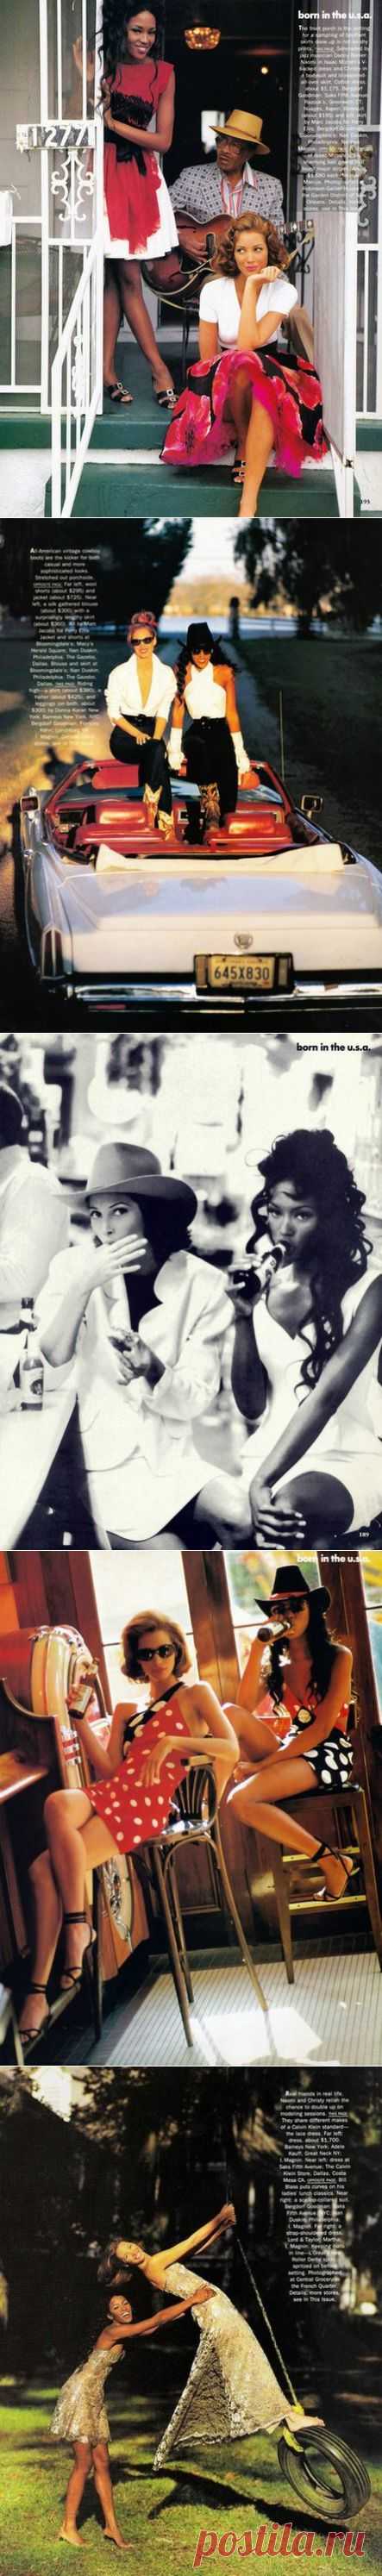 Born in the USA Christy Turlington & Naomi Campbell by Arthur Elgort for Vogue US, February 1992 

❤ ❤ ❤ ❤ ❤ ❤ ❤ ❤ ❤ ❤ ❤ ❤ ❤ ❤ ❤
Почему все мужчины испытывают влечение к кожно-зрительным женщинам? Чем они отличаются? Что это за женщины? Статья про публичных, манящих, АНТИ-женщин: